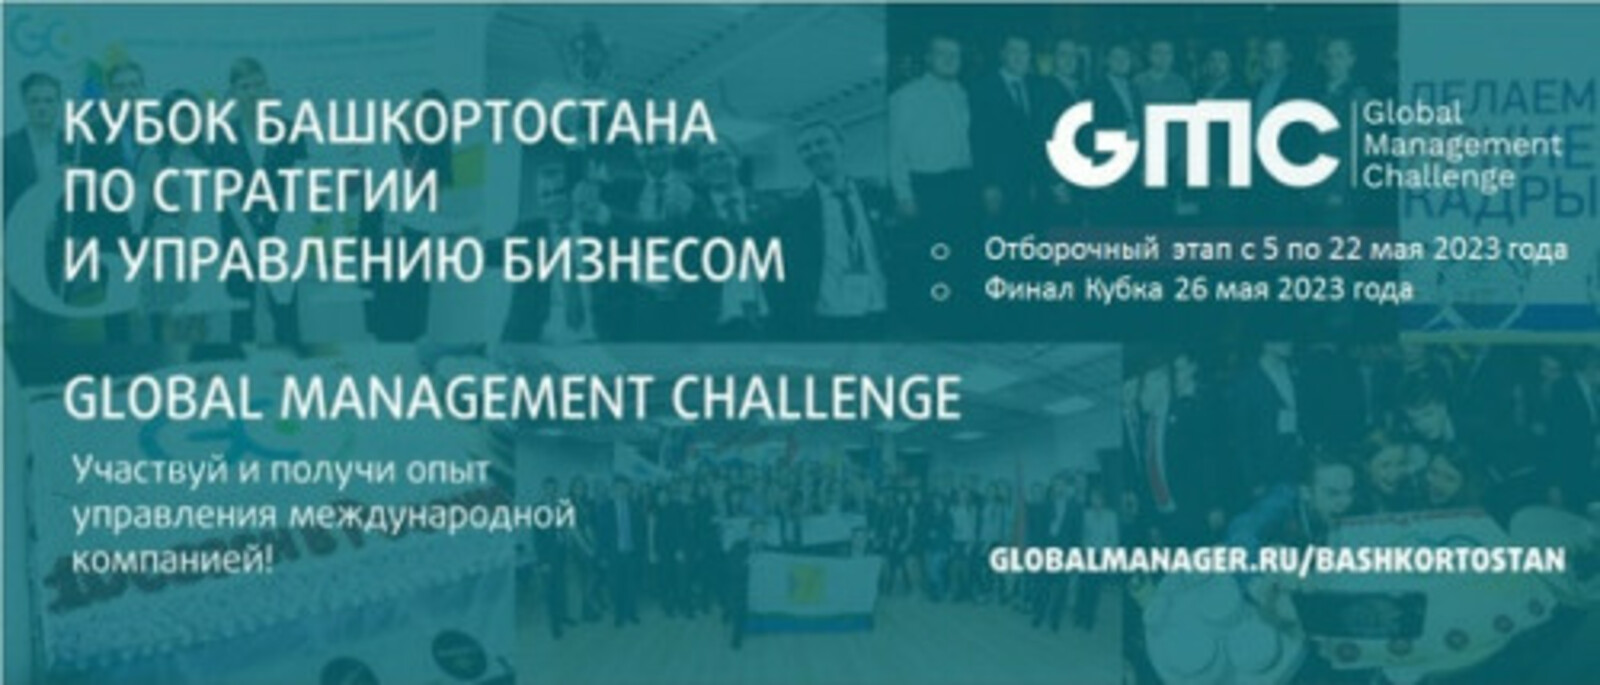 Состоится финал Кубка Башкортостана по стратегии и управлению бизнесом